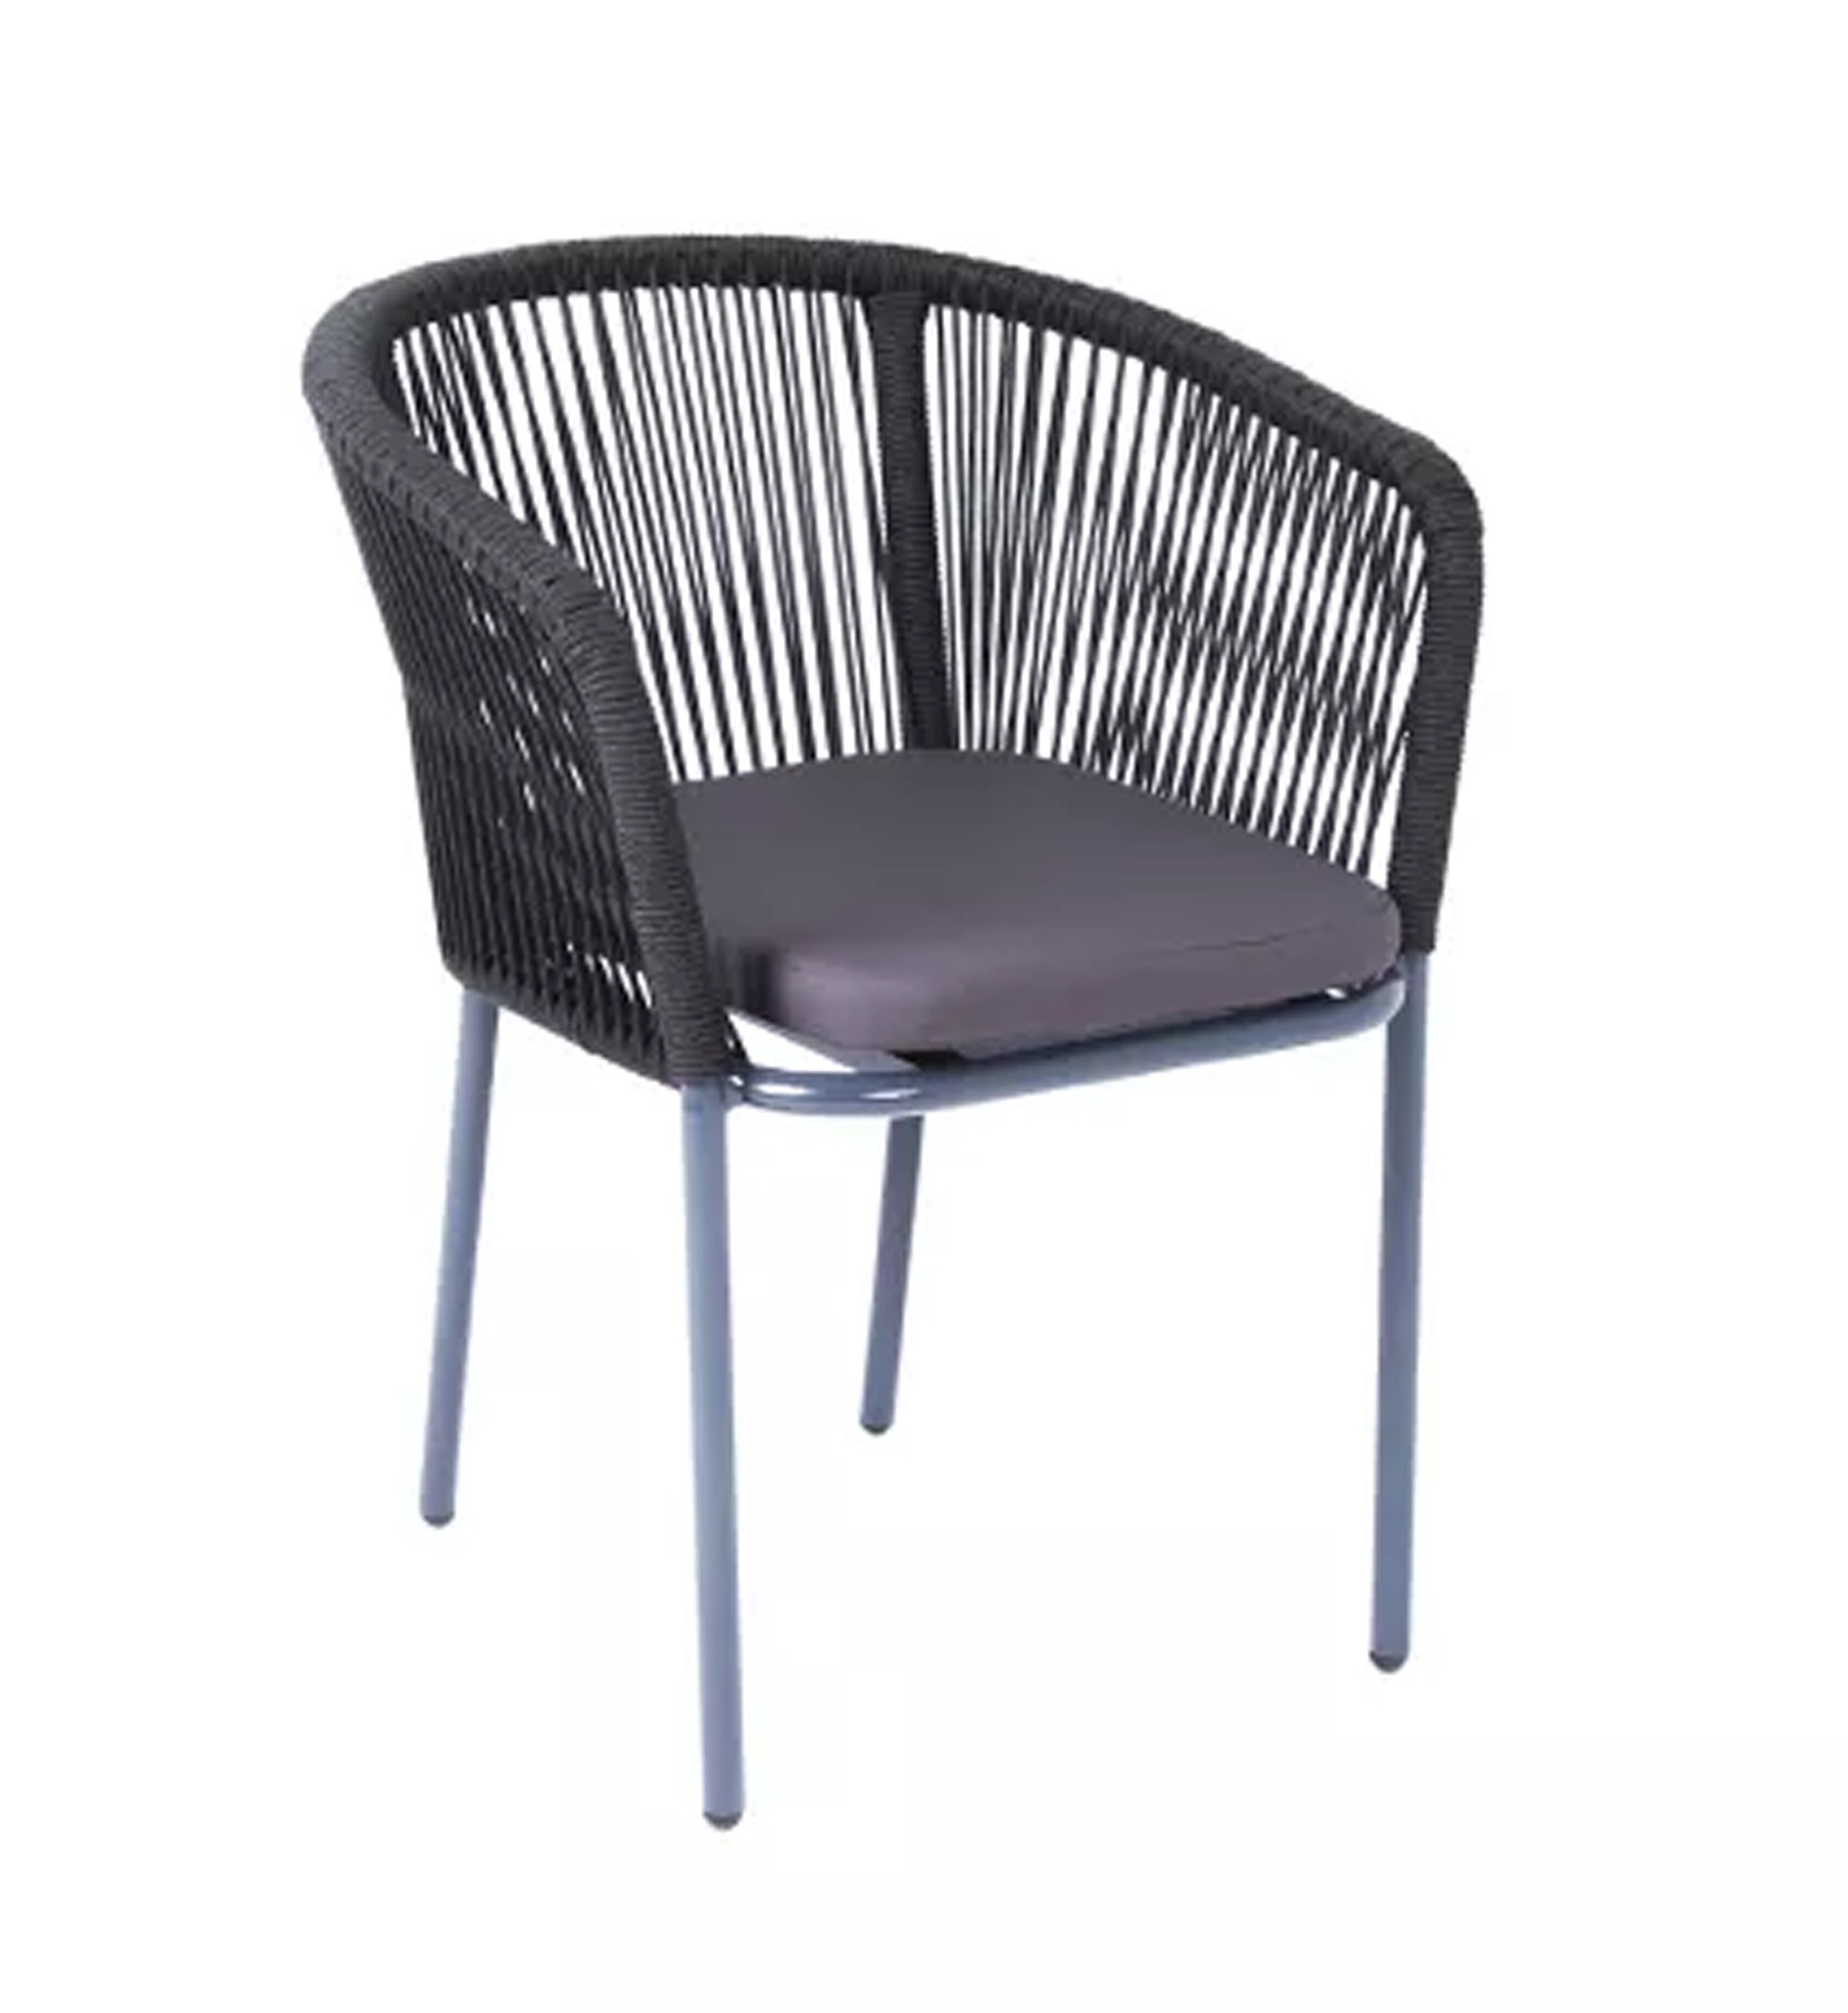 Плетеный стул из роупа (веревки) Марсель, каркас темно-серый, цвет темно-серый